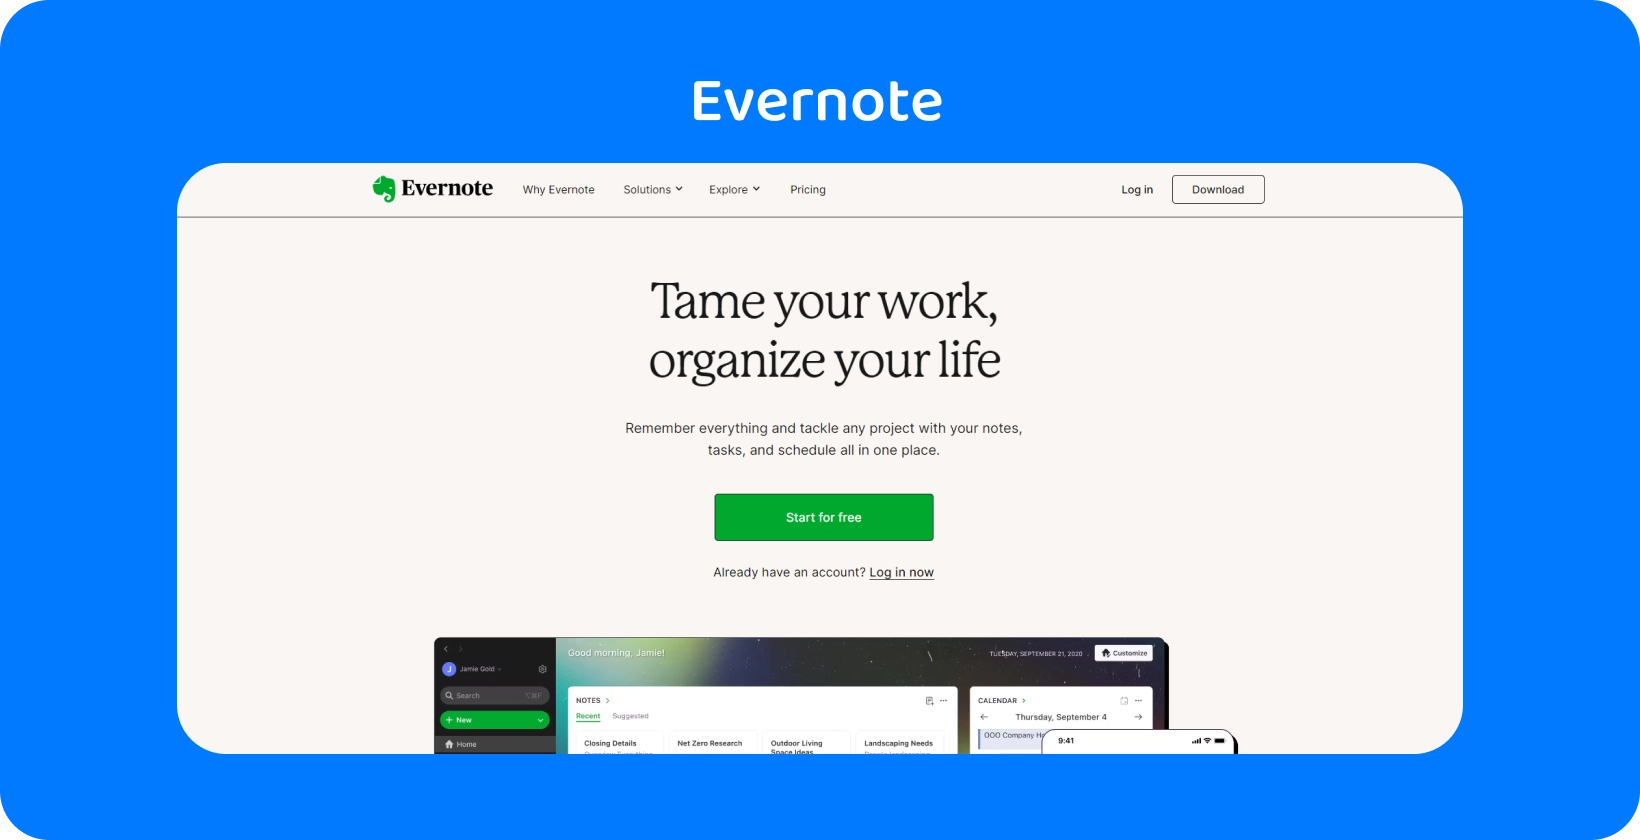 Evernote hjemmeside som fremhever organisasjonsfunksjoner, i likhet med appens møtetranskripsjon for advokater.